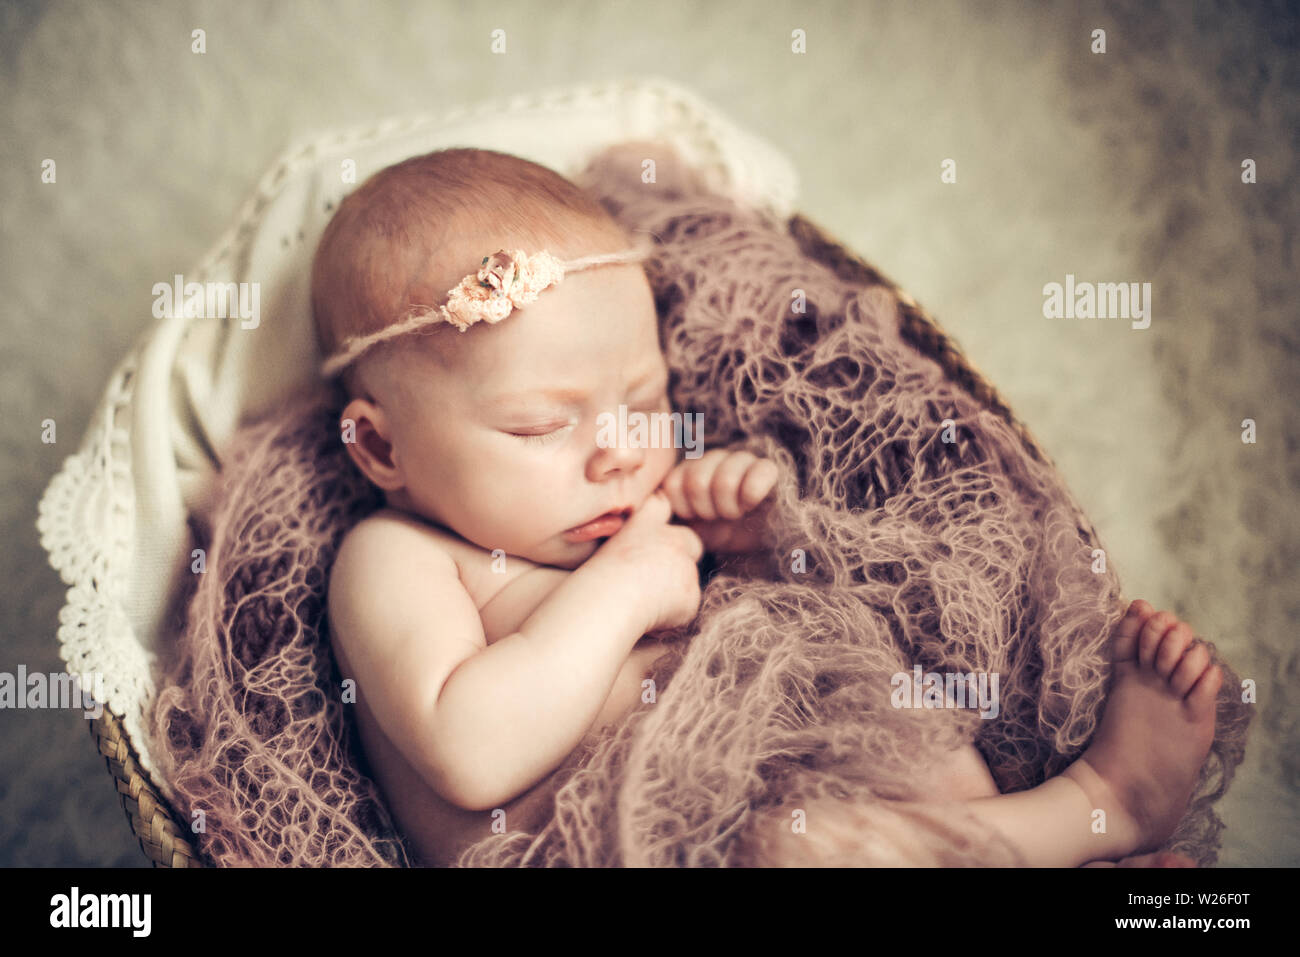 Bebé niña durmiendo en una cesta. Concepto de disparo, la inocencia de los recién nacidos. Foto de stock